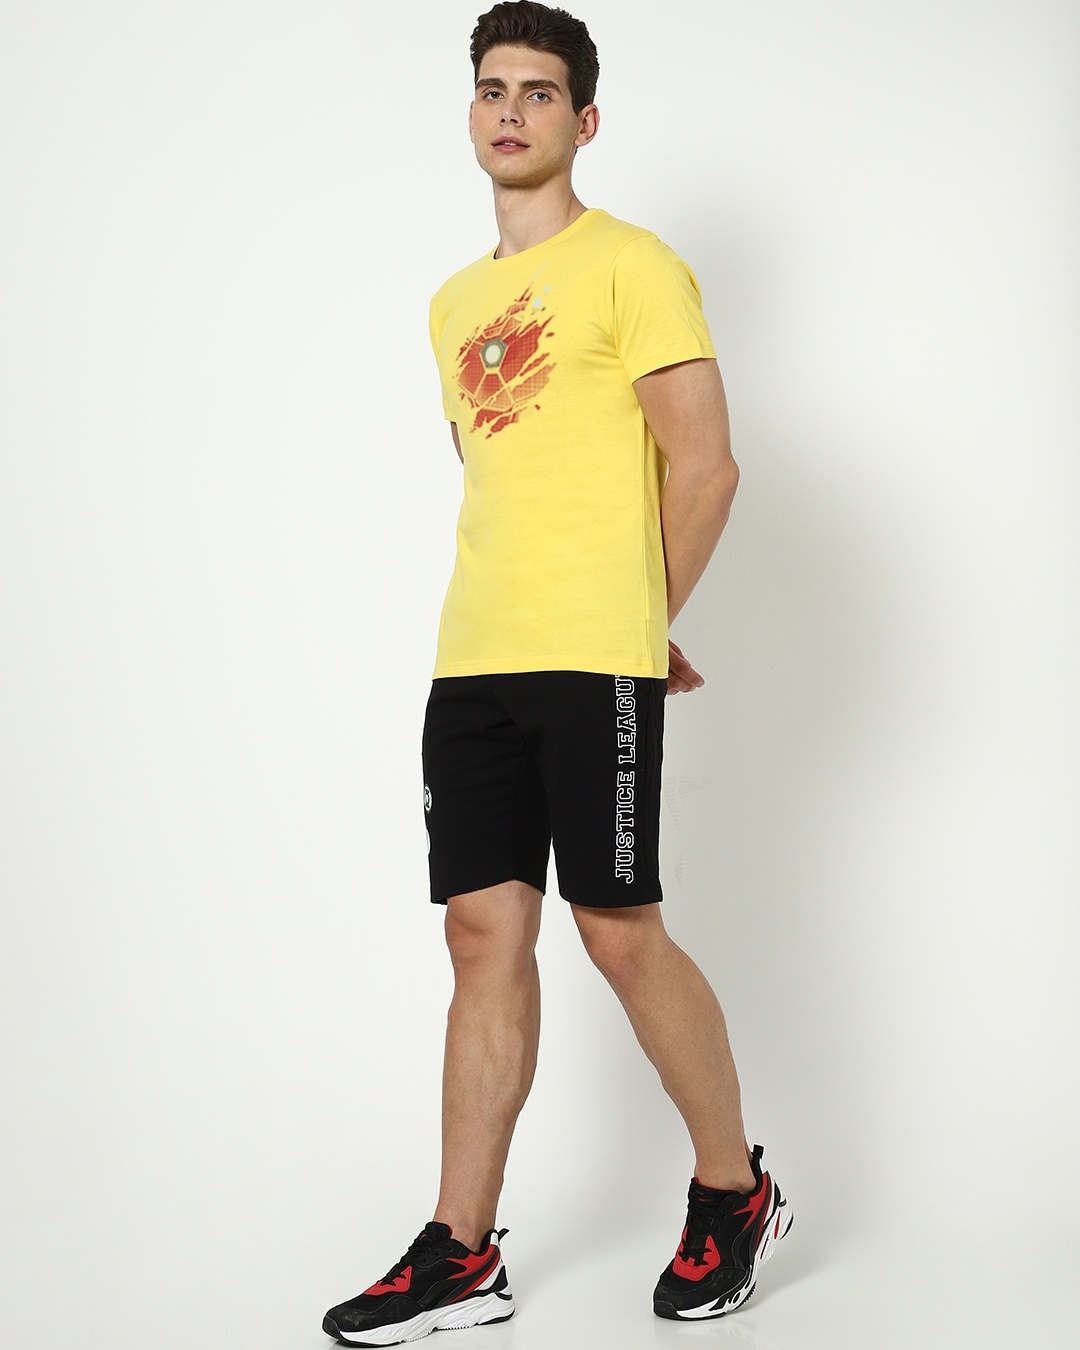 Shop Iron Man of War (AVL) Men's T-shirt-Design